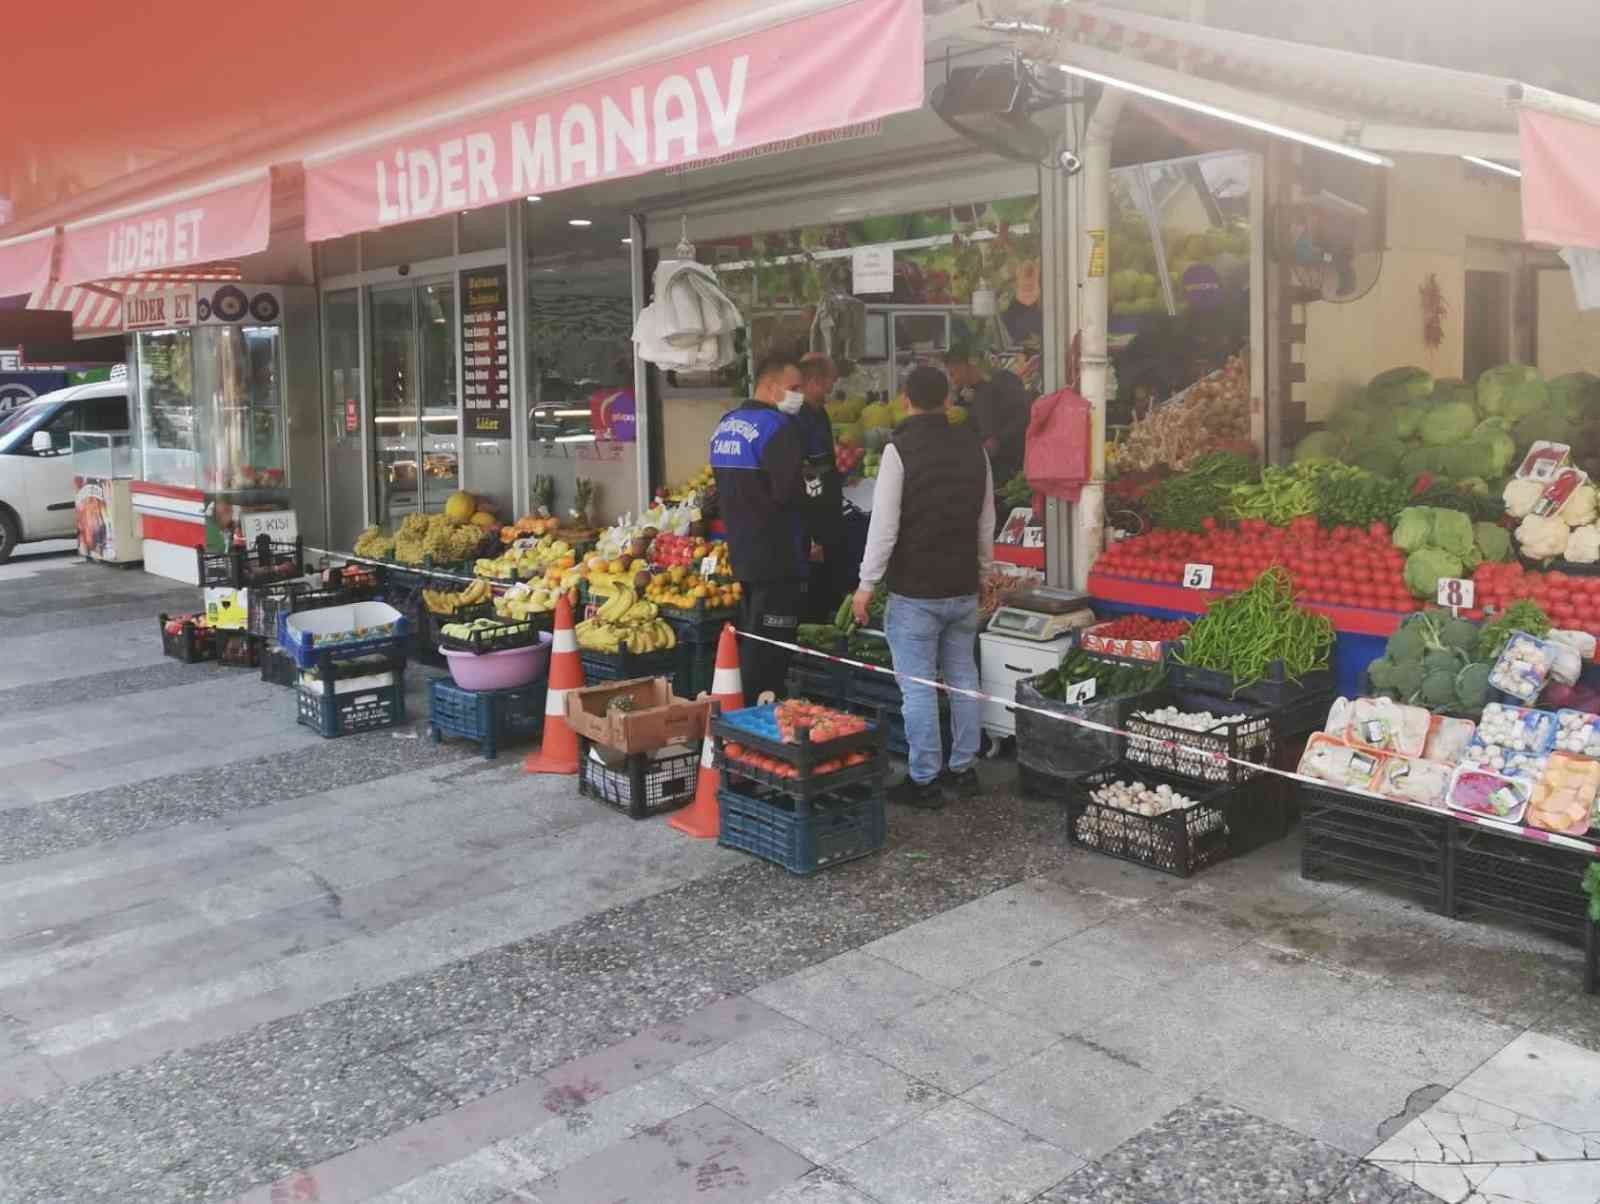 Manisa Büyükşehir Belediyesinden market ve pazaryerlerinde sıkı denetim #manisa